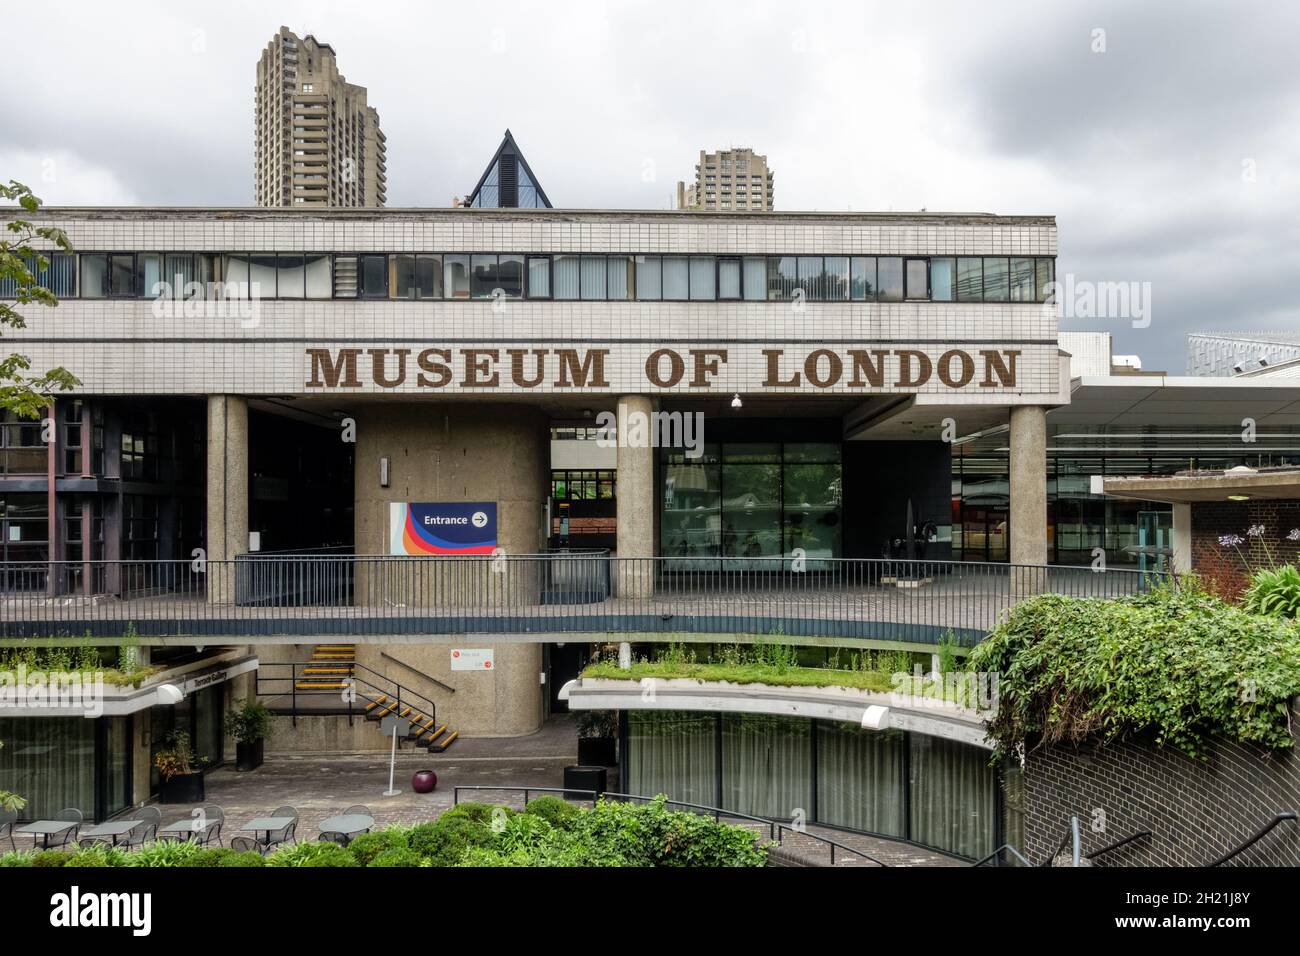 Ancien musée de Londres, Londres Angleterre Royaume-Uni Royaume-Uni Banque D'Images